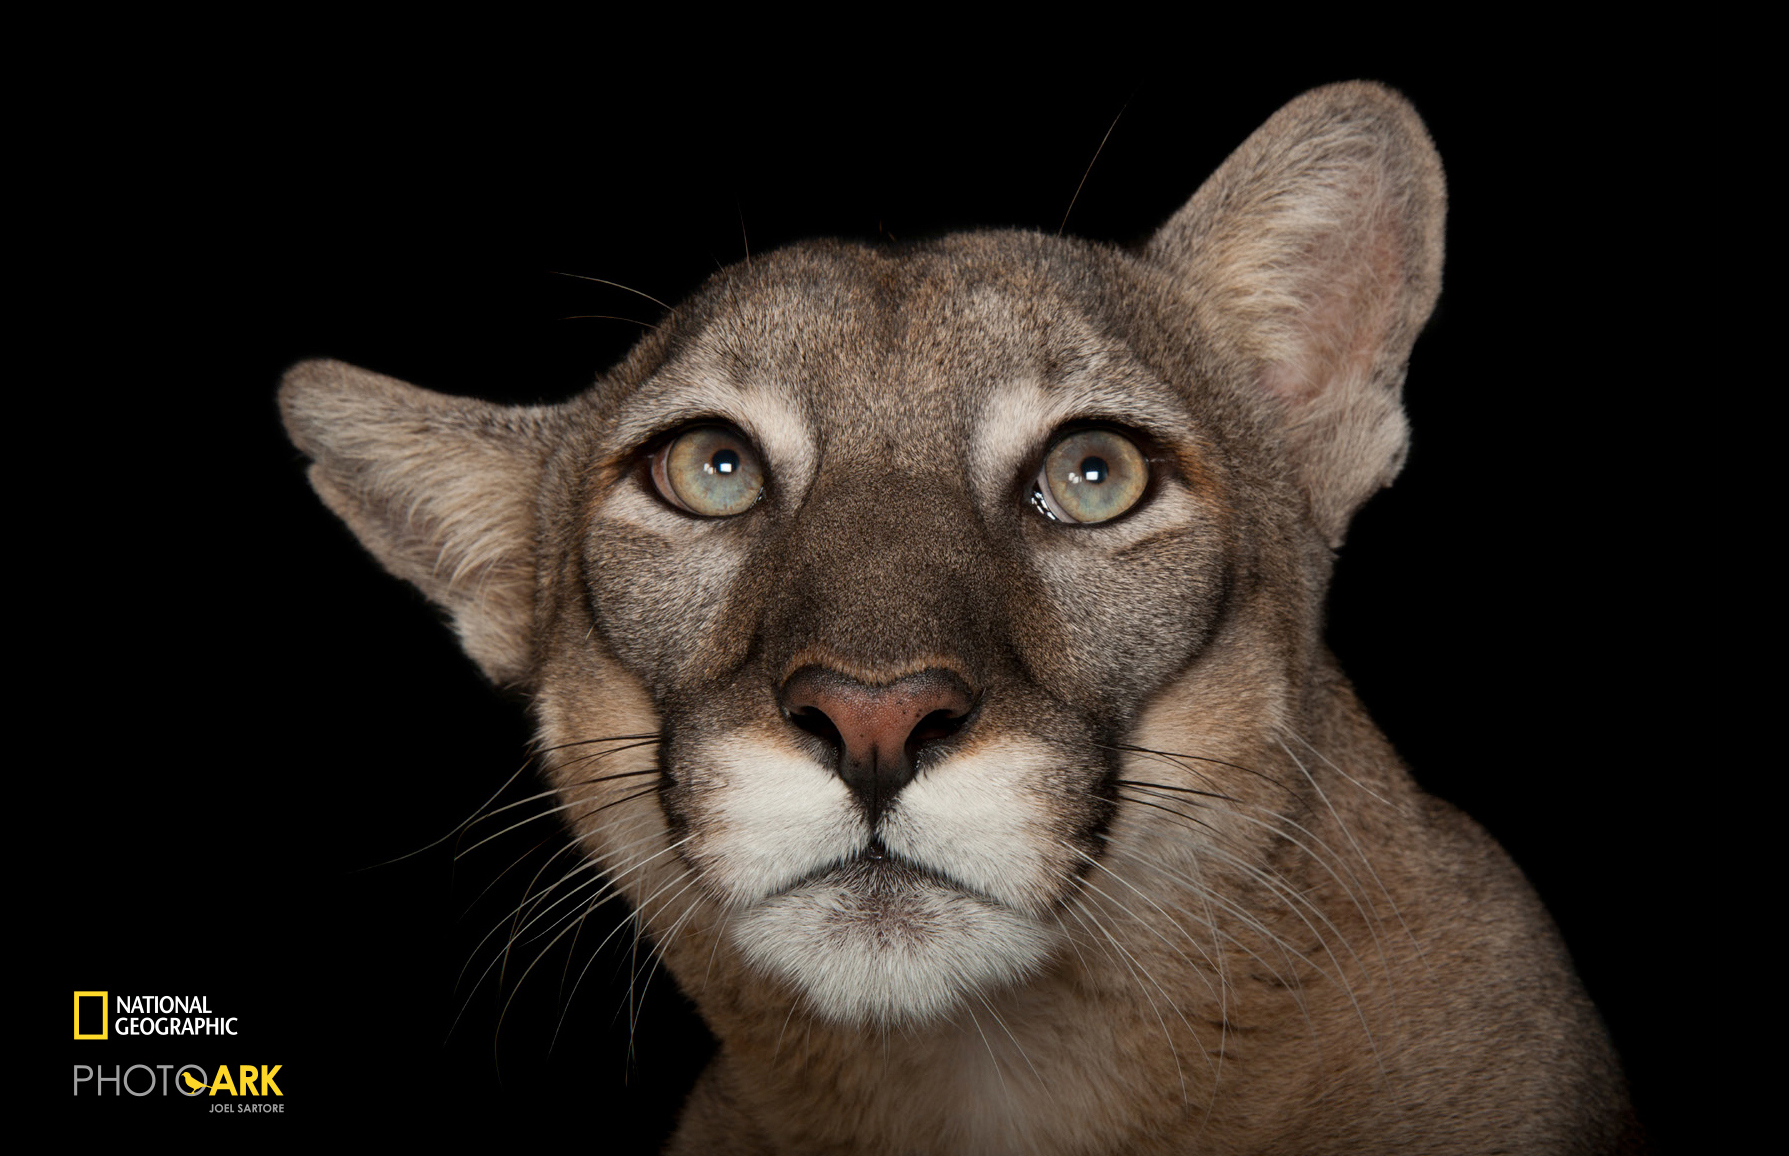 開店祝い PHOTO ARK 消えゆく動物 絶滅から動物を守る撮影プロジェクト